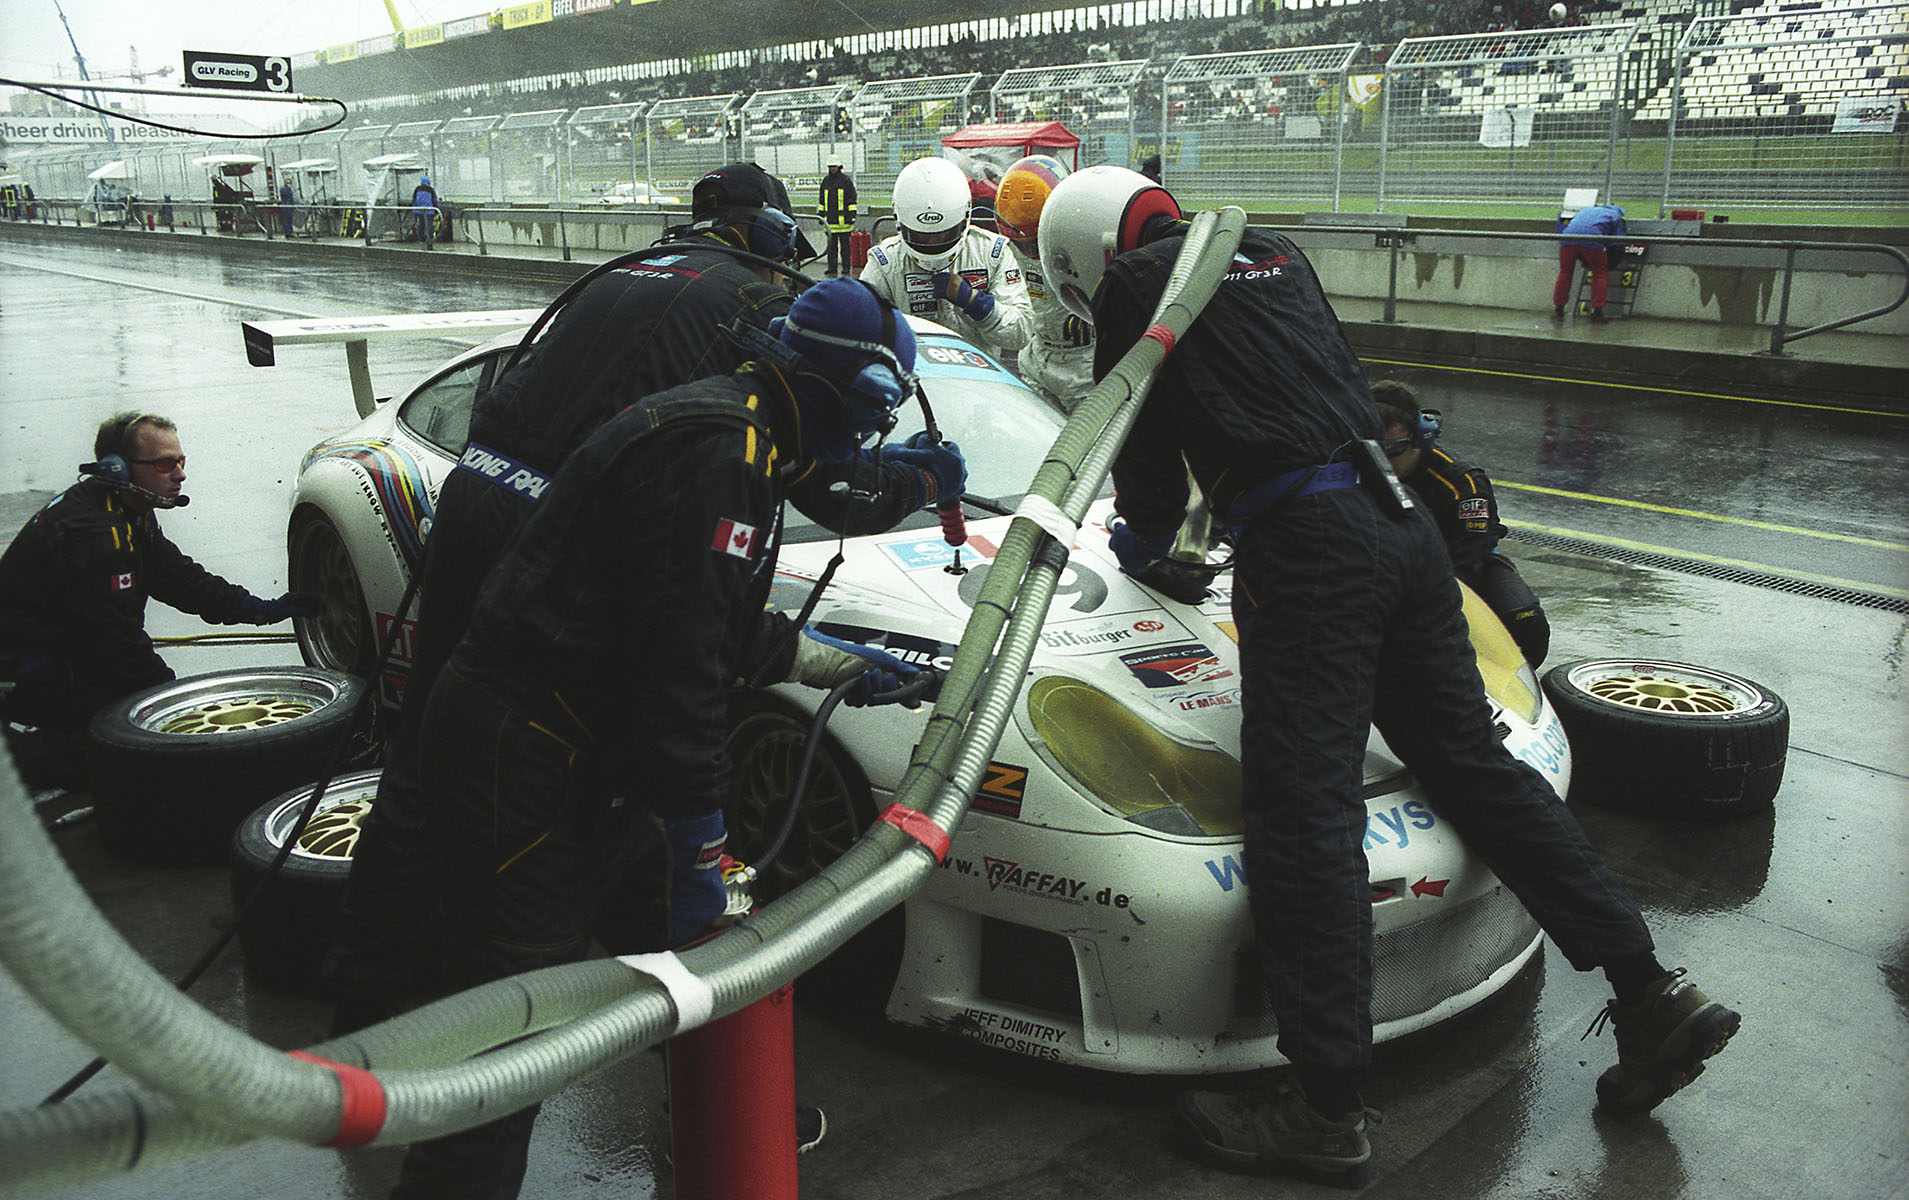 1000 km Le Mans Race auf dem Nürburgring im Jahr 2000